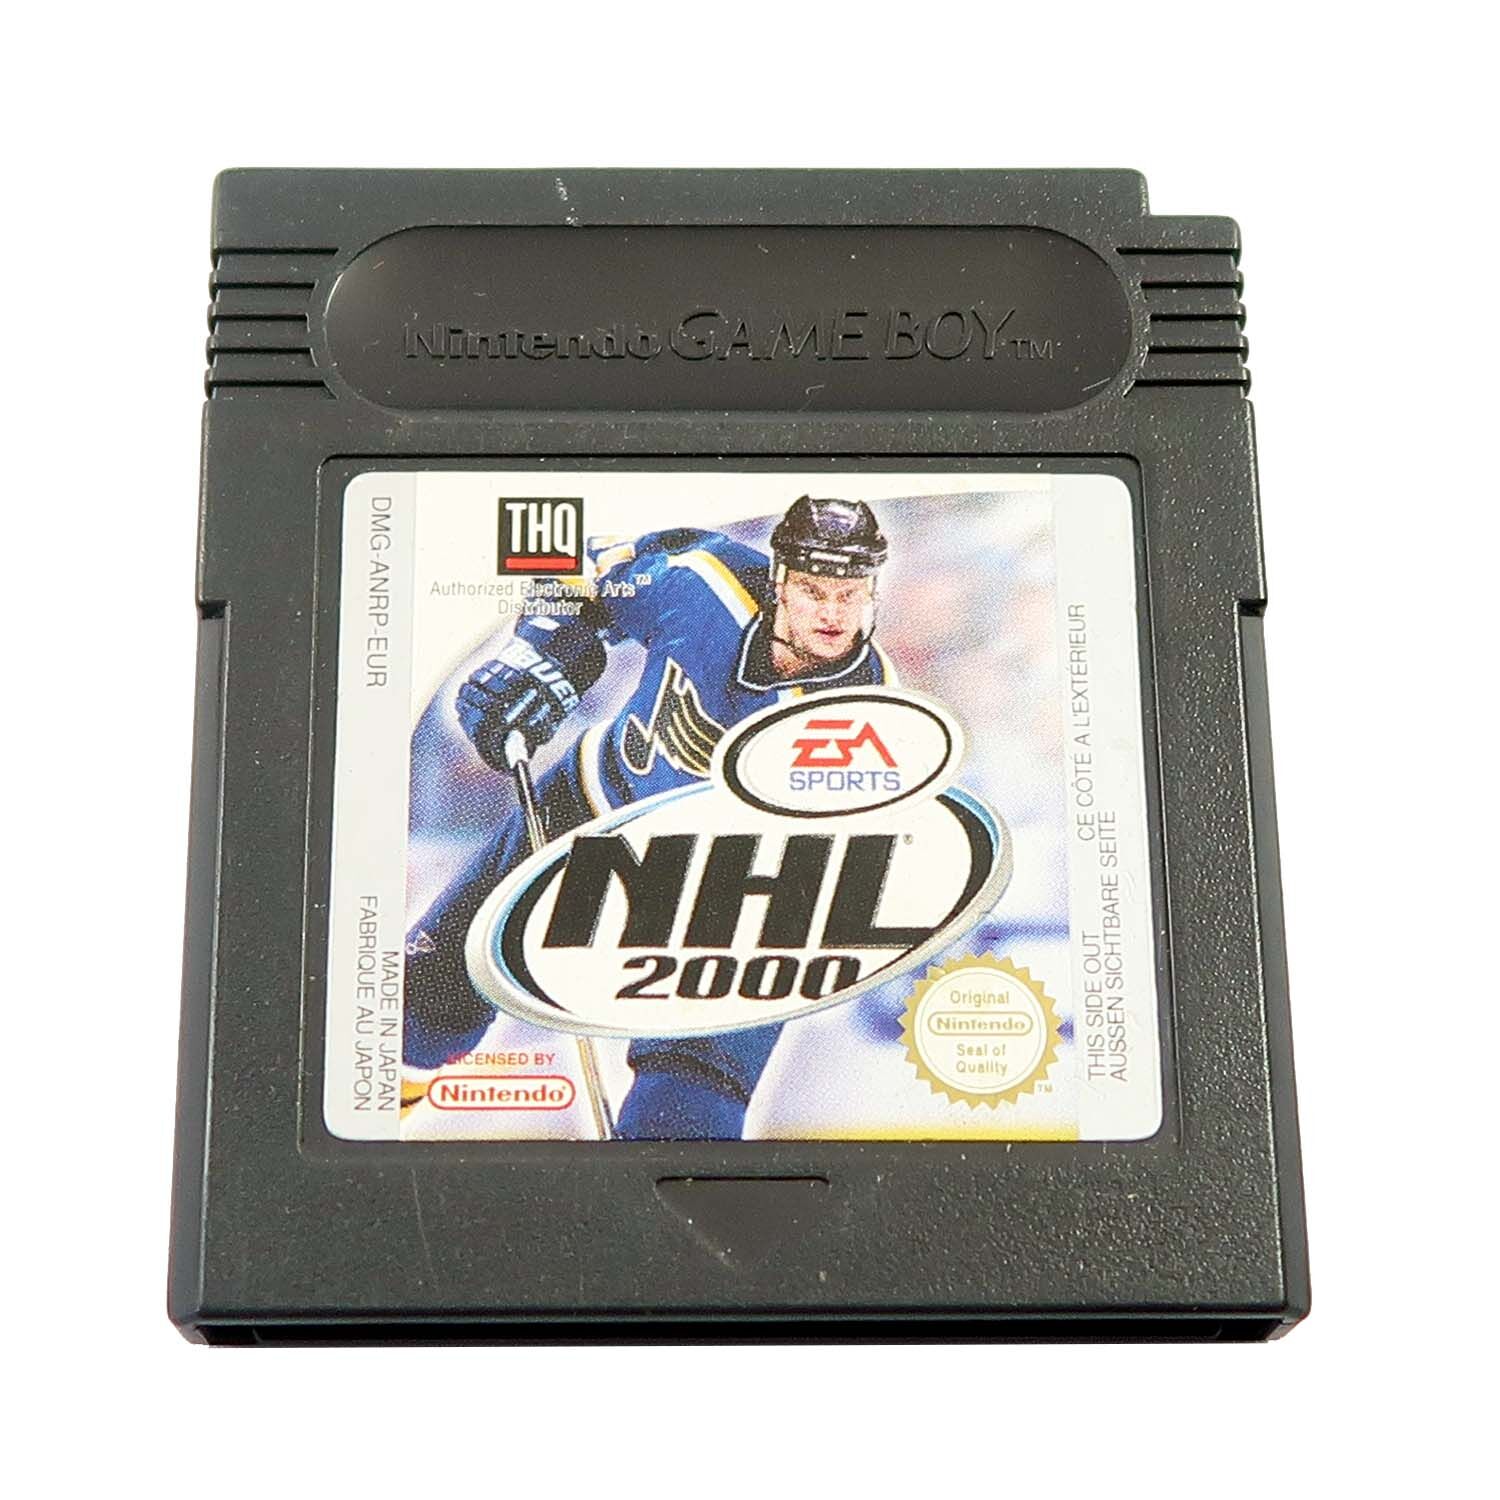 NHL 2000 - Game Boy Color